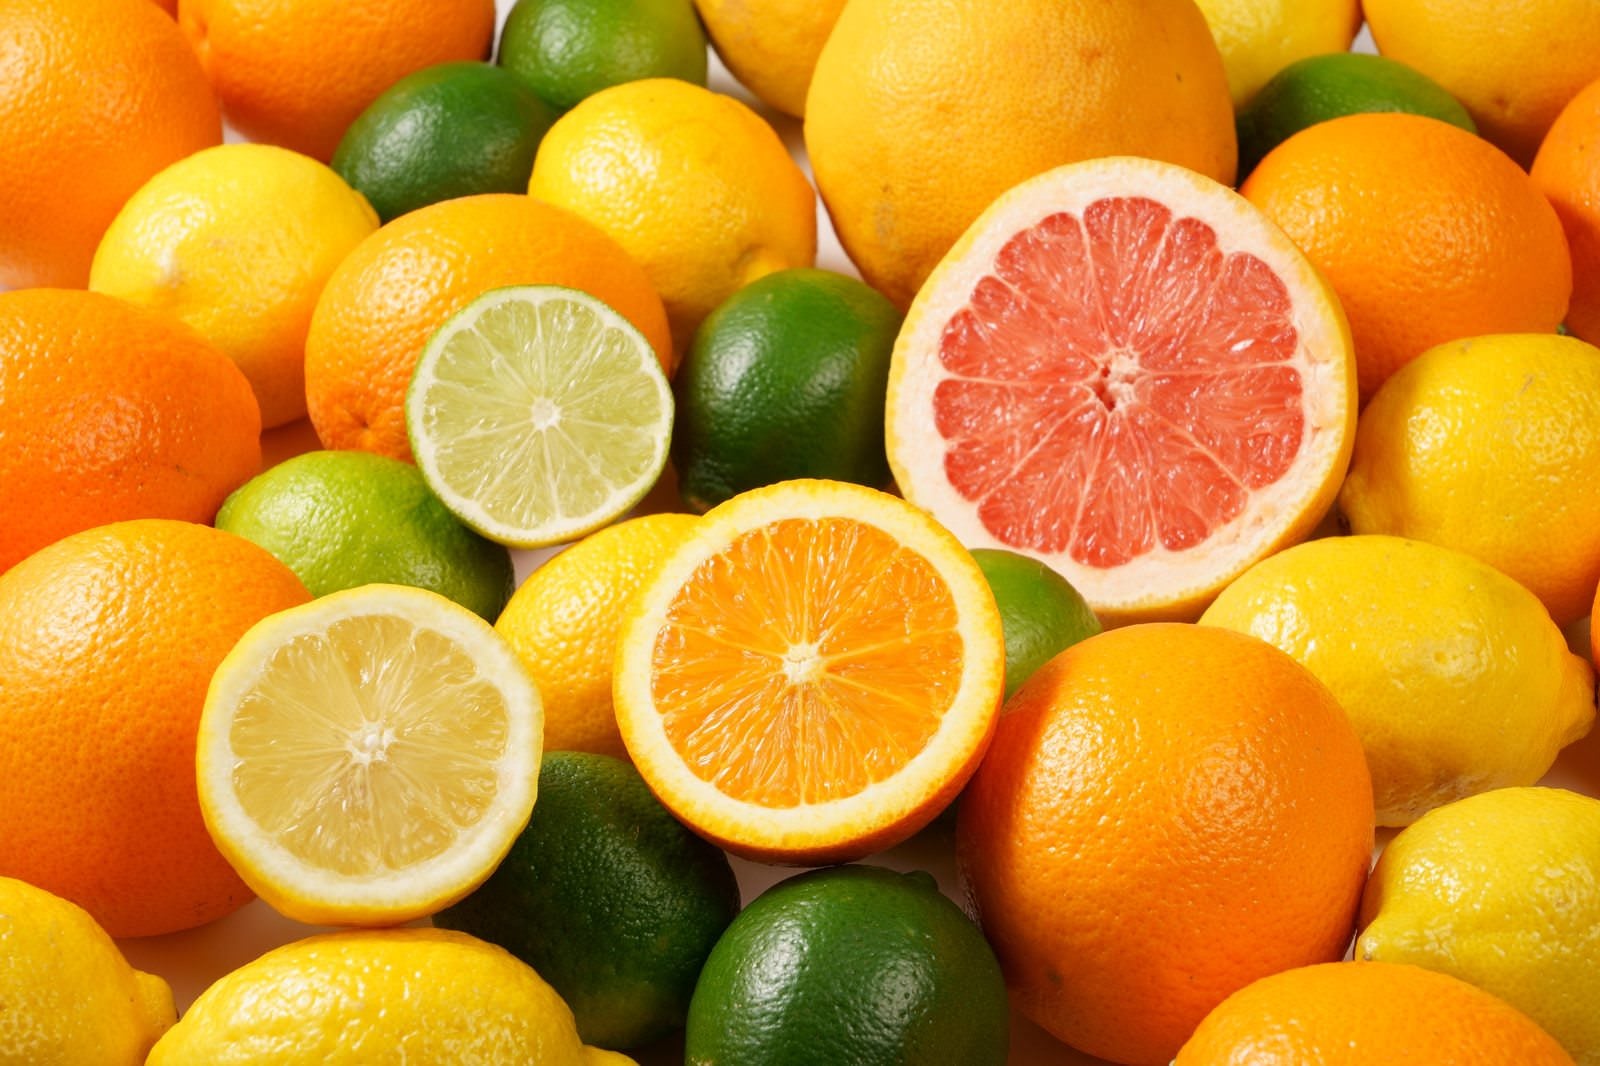 「柑橘系のフルーツ盛りだくさん」の写真